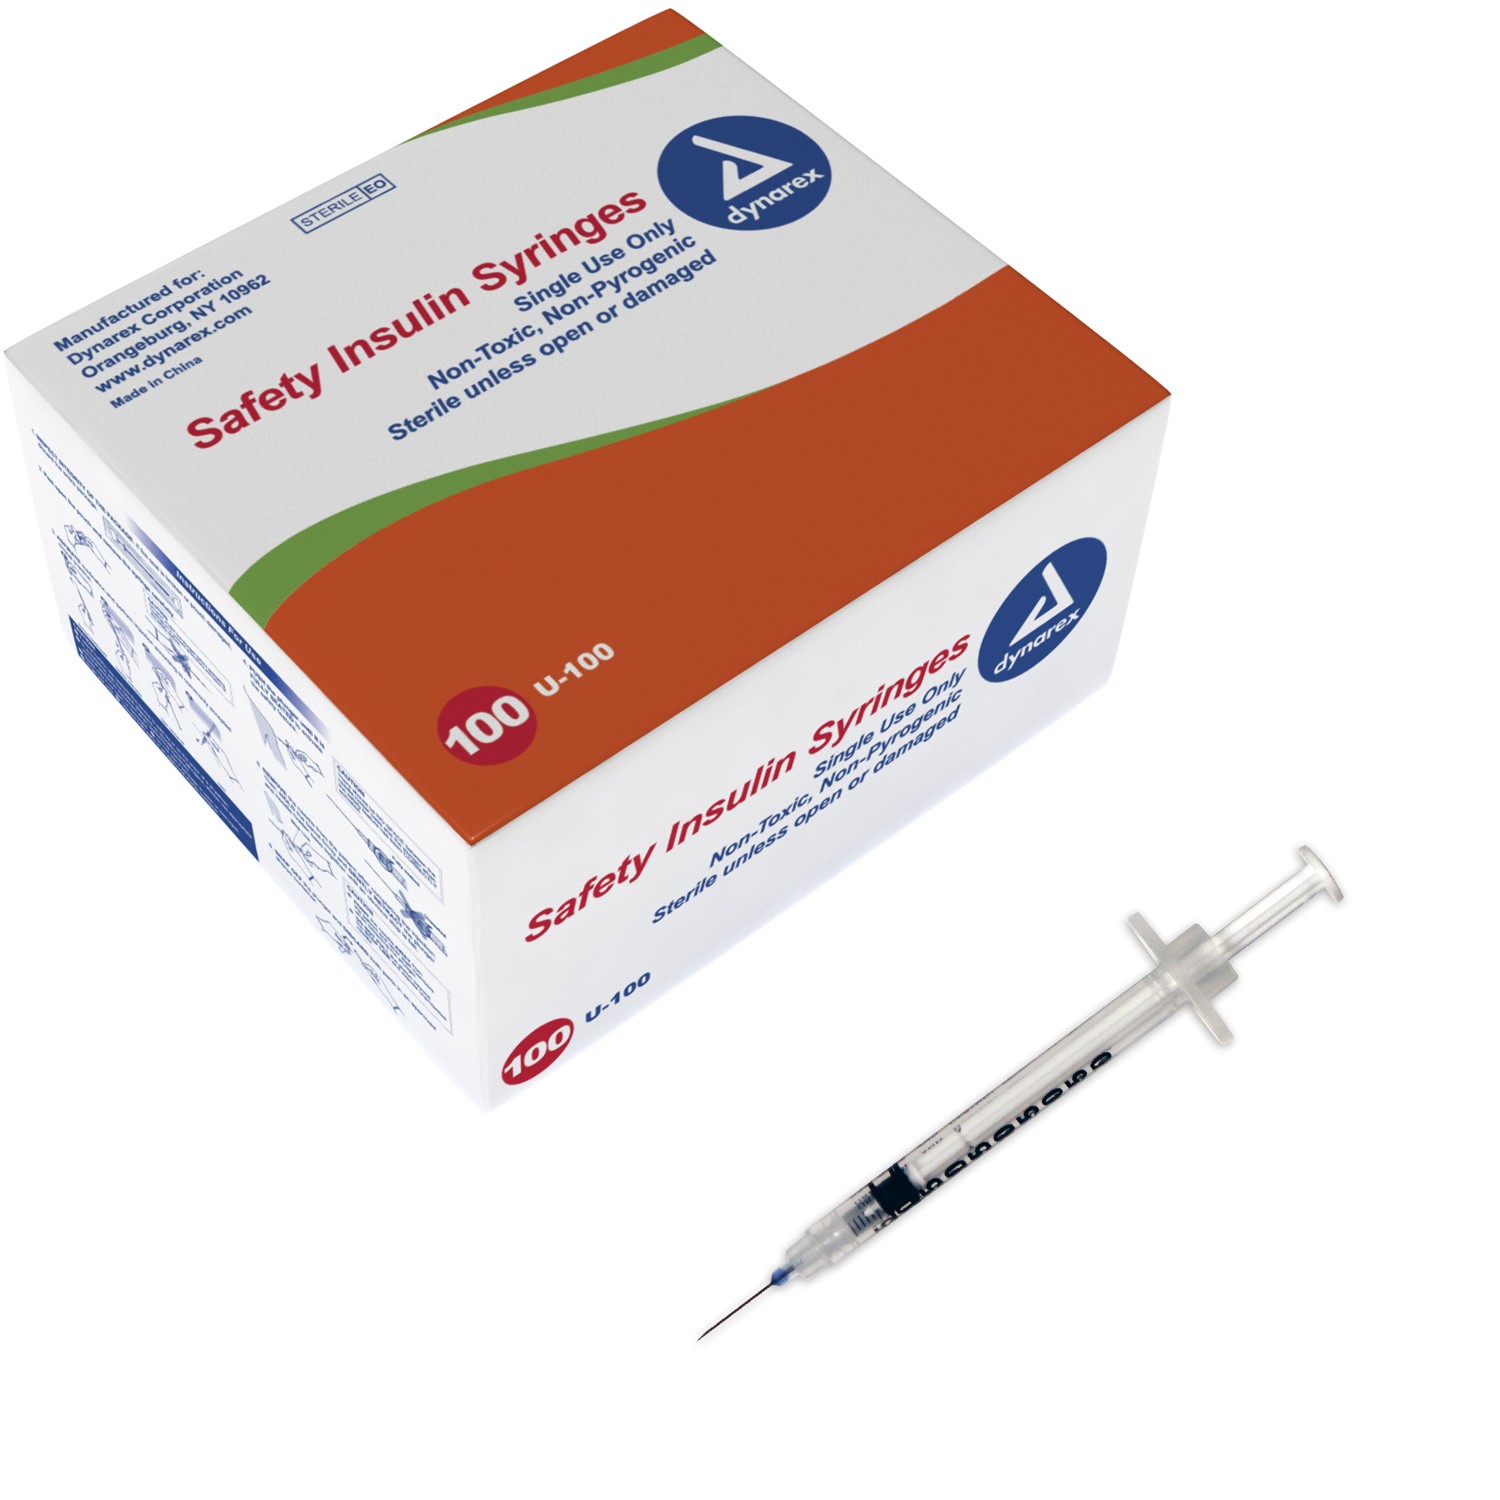 Safety Insulin Syringe - .5cc - 30G, 5/16" needle